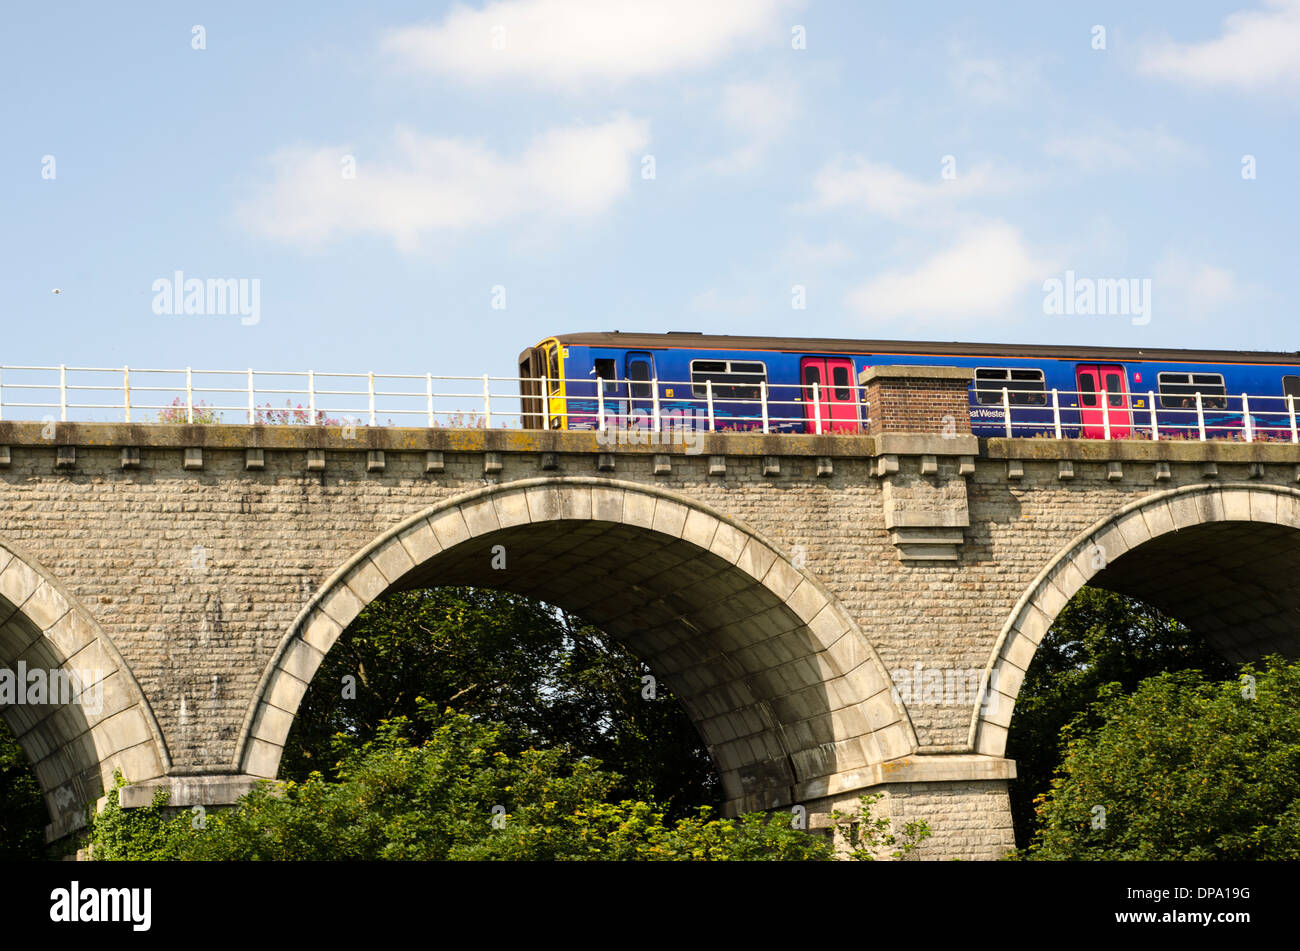 Un tren que va de colores brillantes más antiguo puente de piedra por encima de las copas de los árboles, reino unido Foto de stock